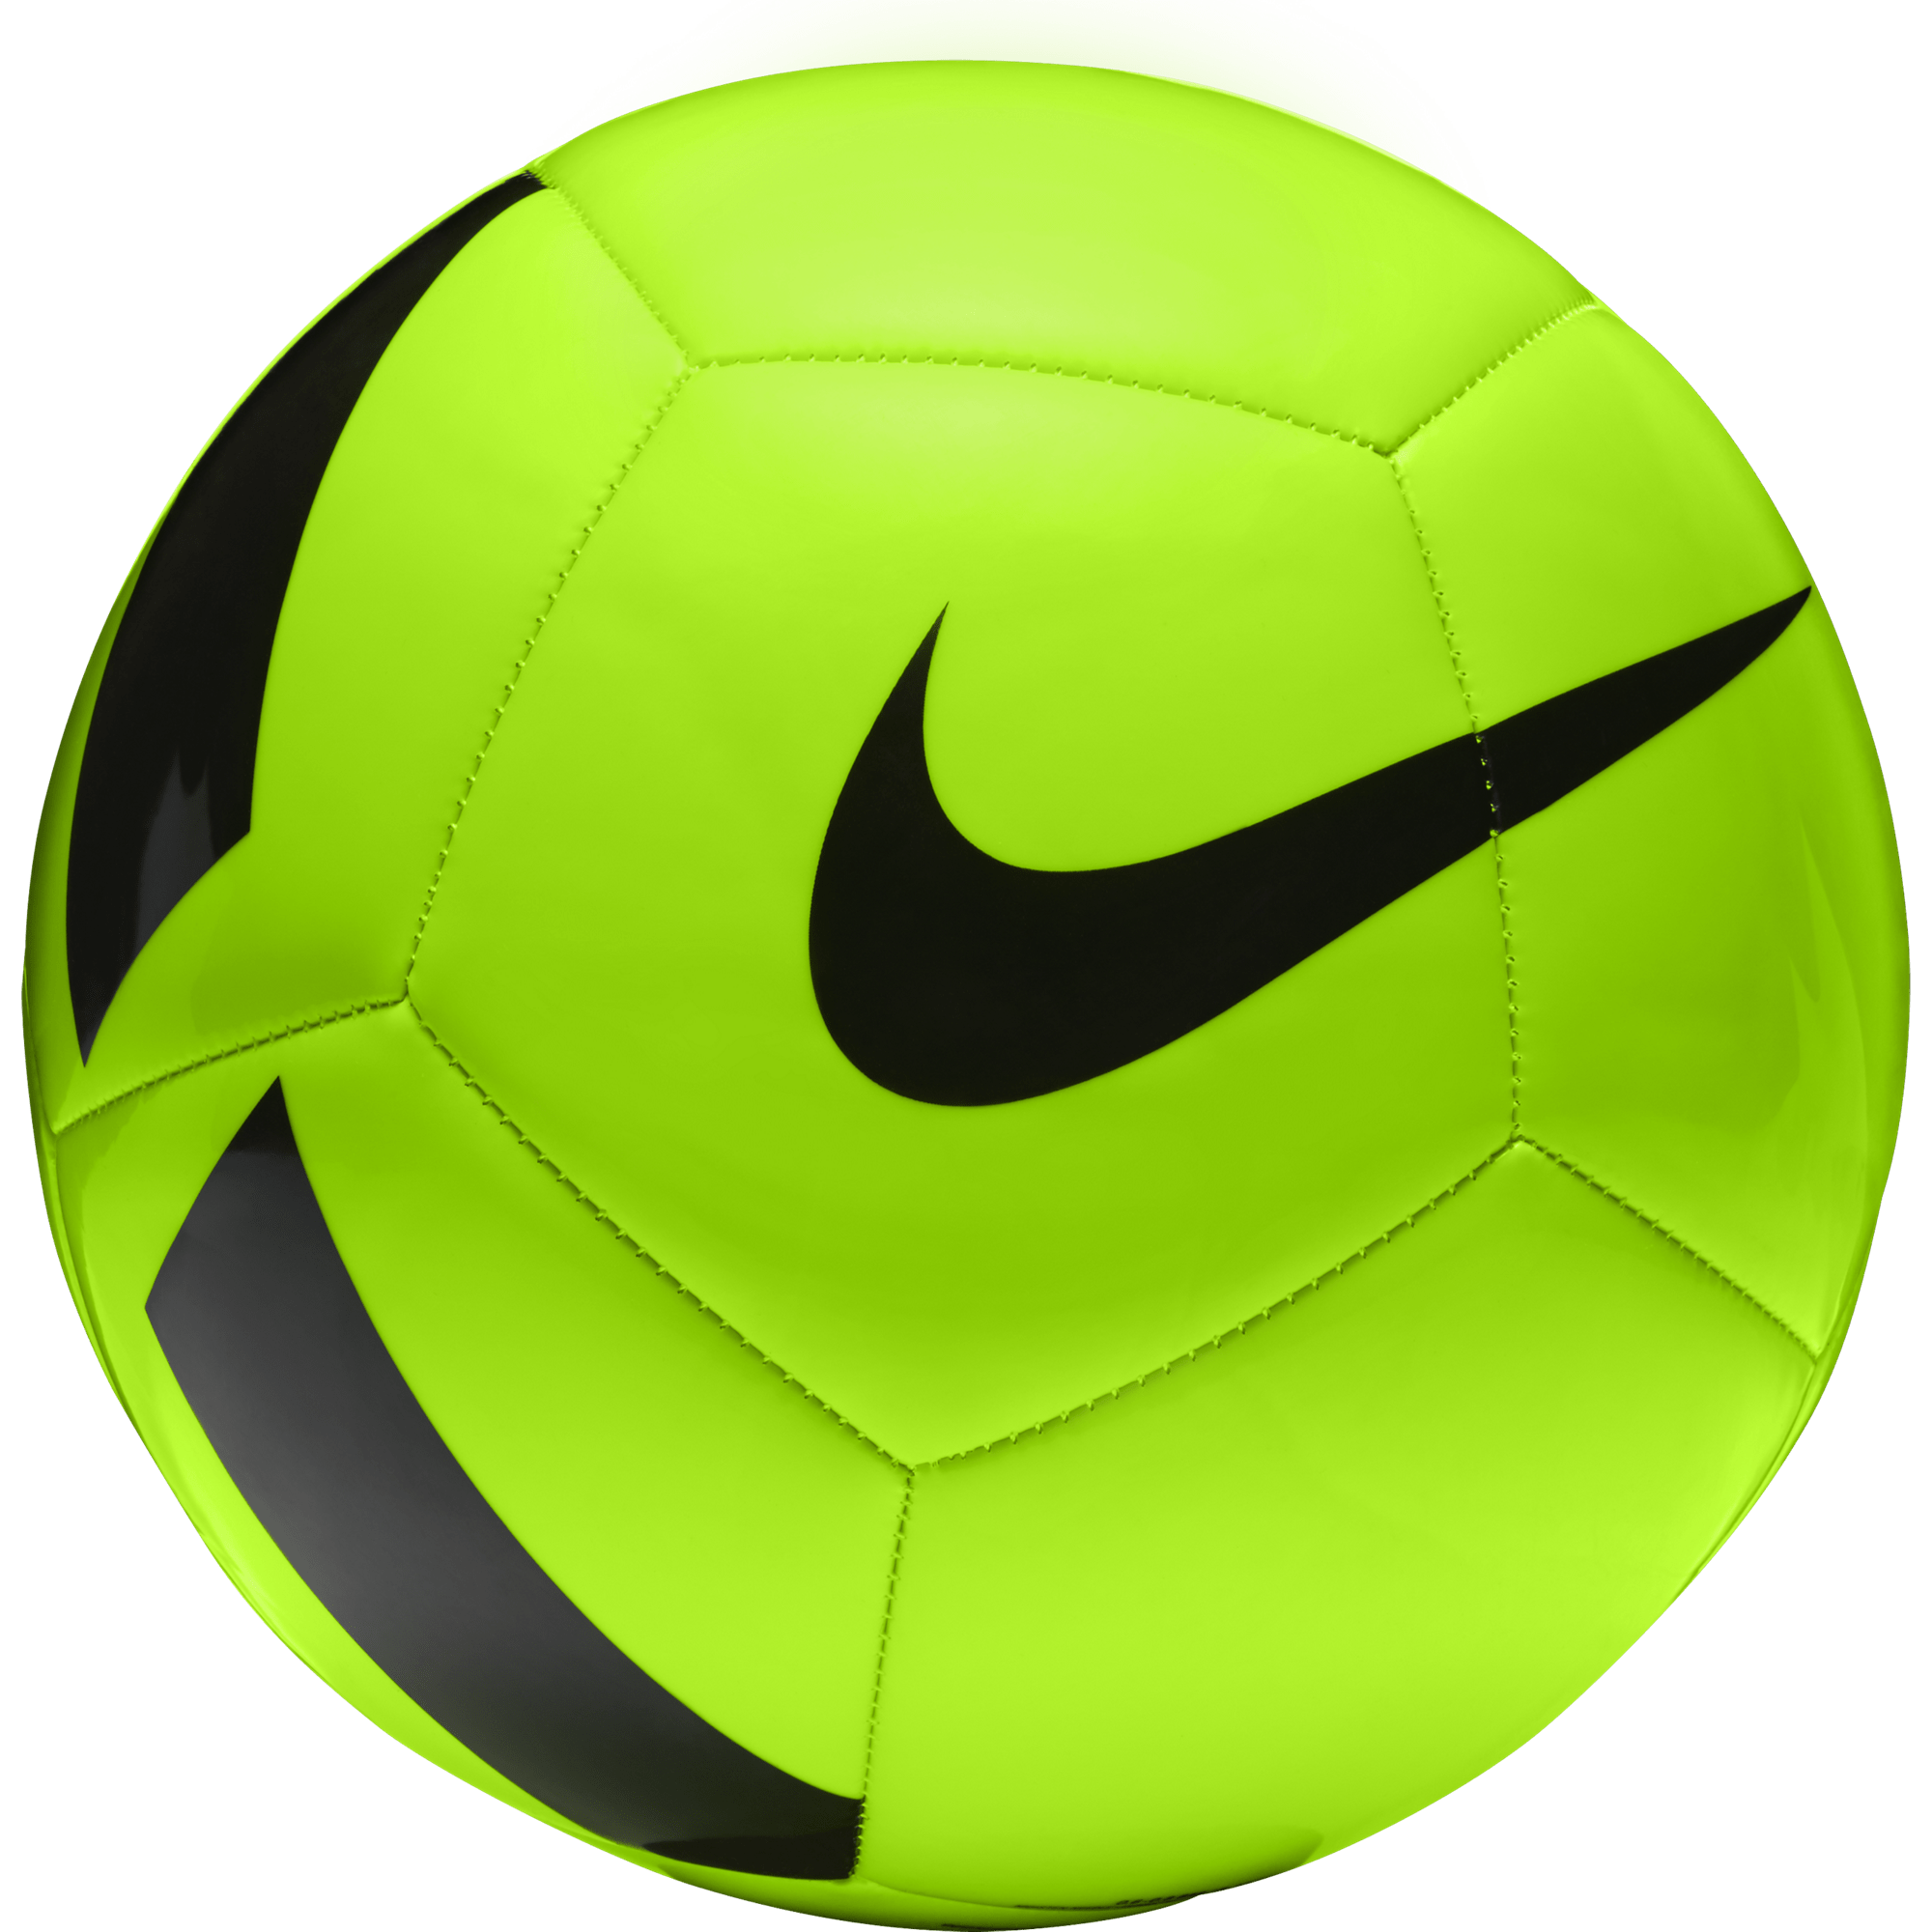 Balón de Fútbol NIKE PITCH – Cruz Meraki